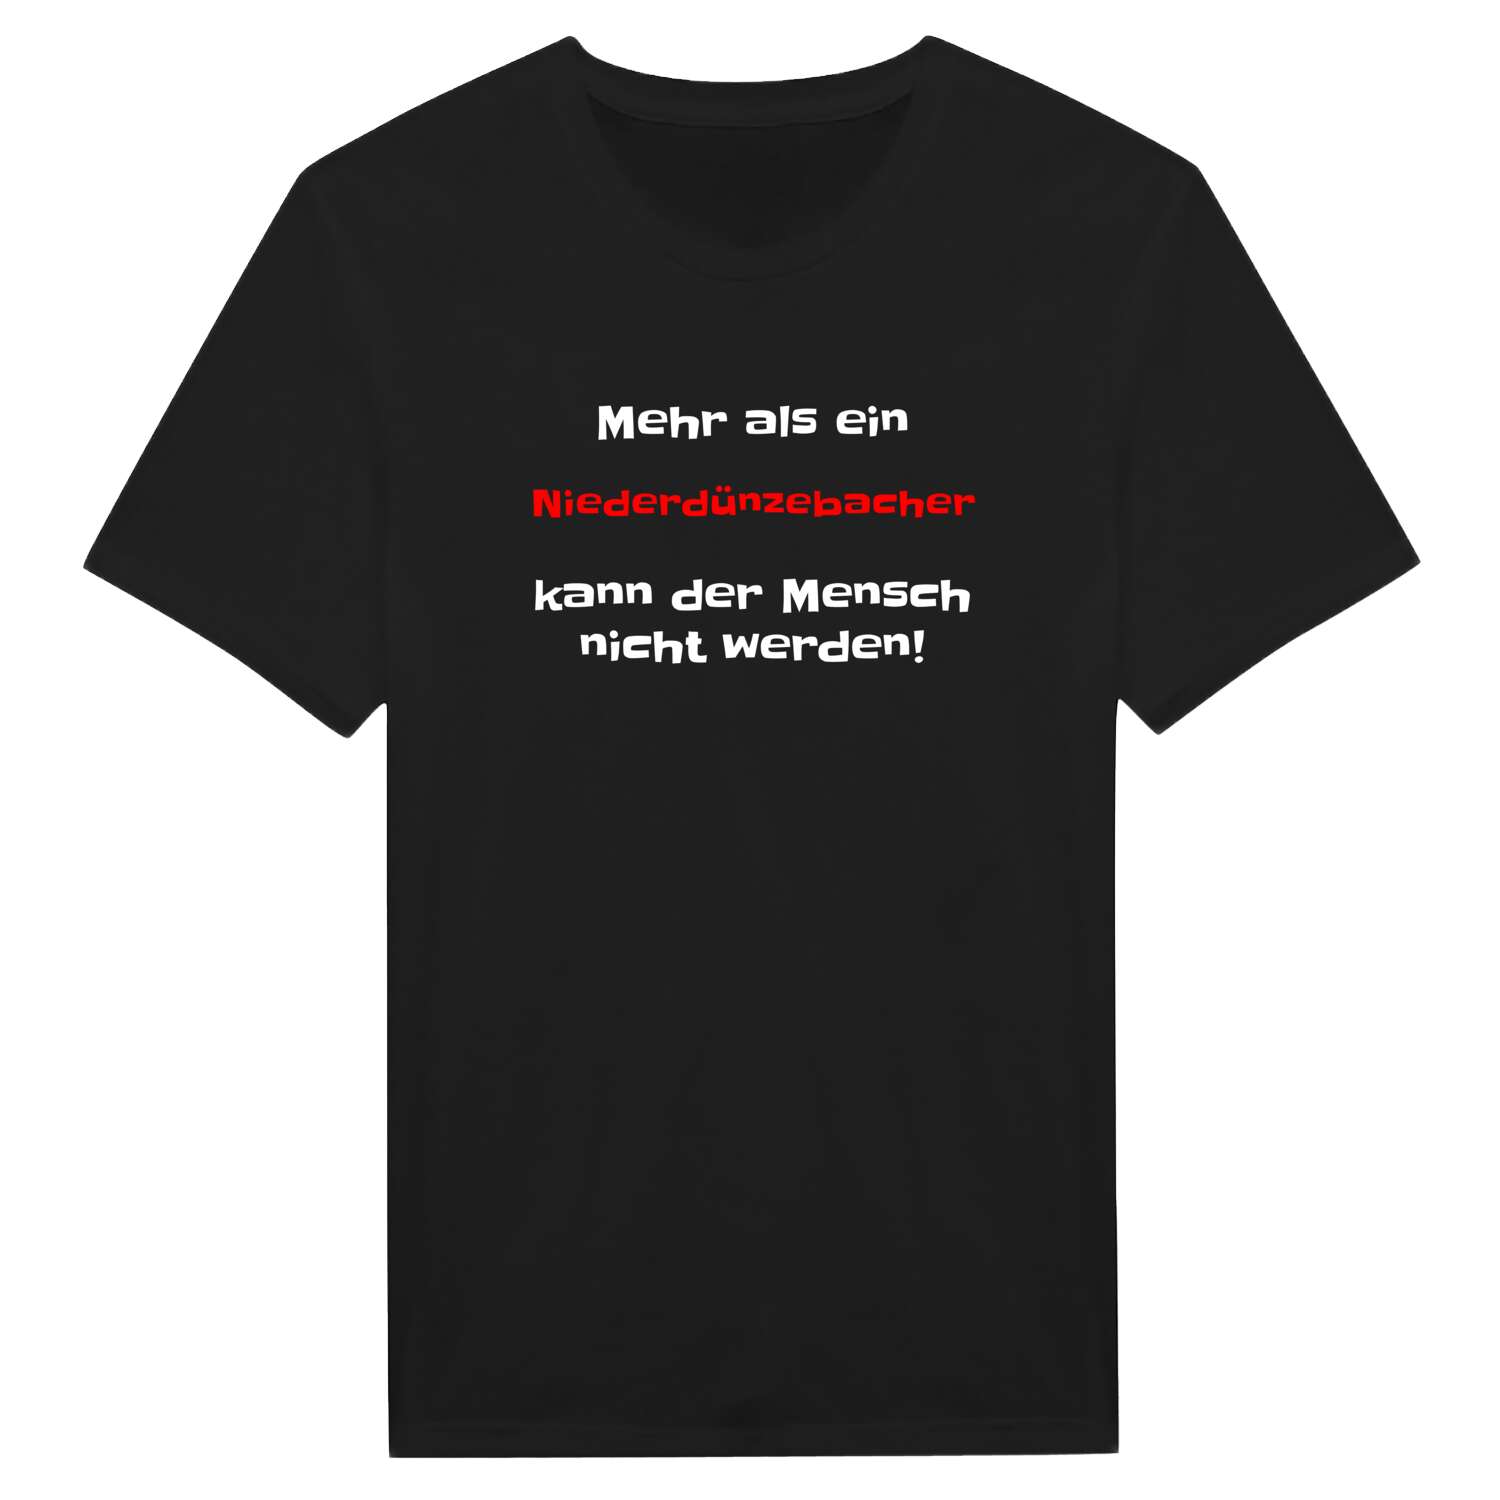 Niederdünzebach T-Shirt »Mehr als ein«